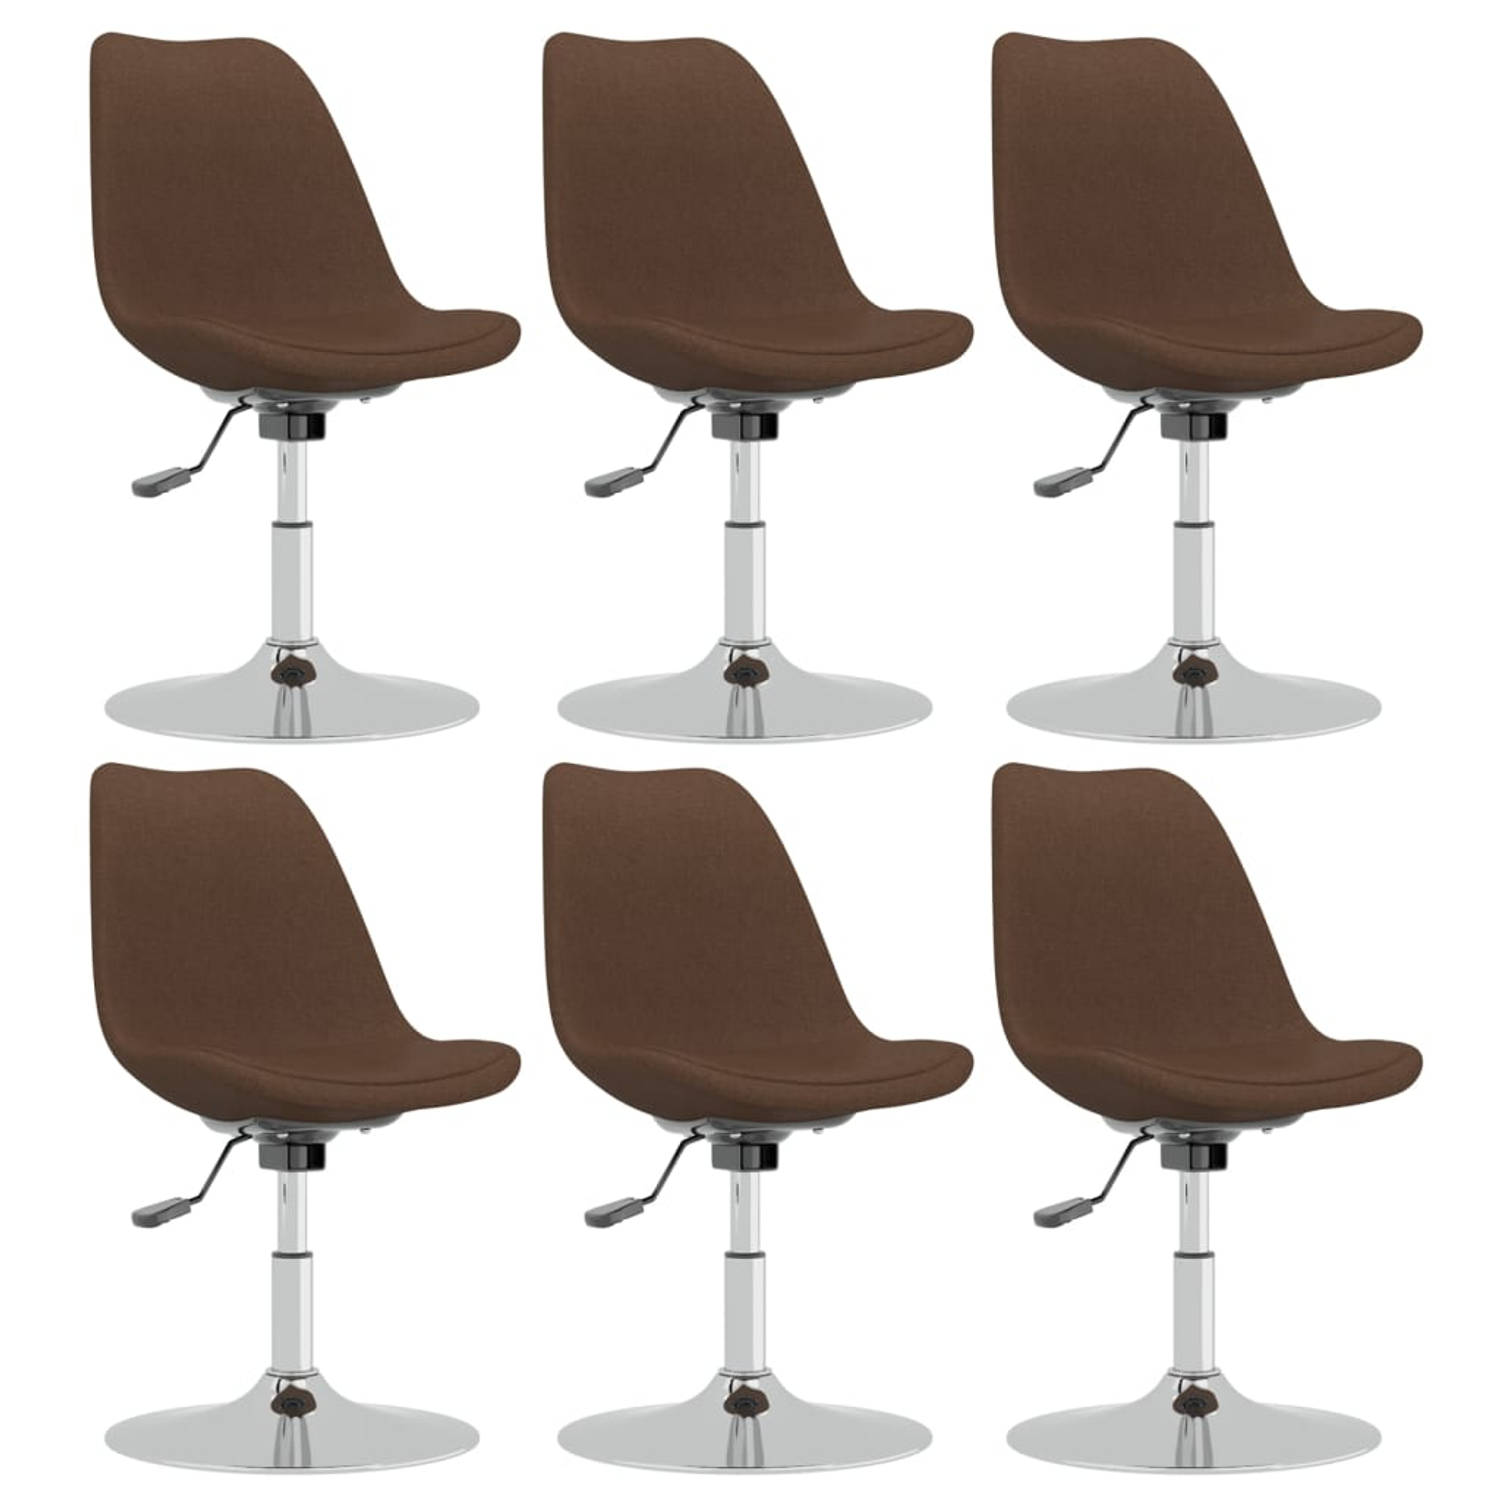 The Living Store Eetkamerstoel Bruin 49 x 45 cm - Comfortabele en duurzame stoel met verstelbare hoogte en 360 graden draaibaar - Verchroomd metalen frame - Set van 6 stoelen